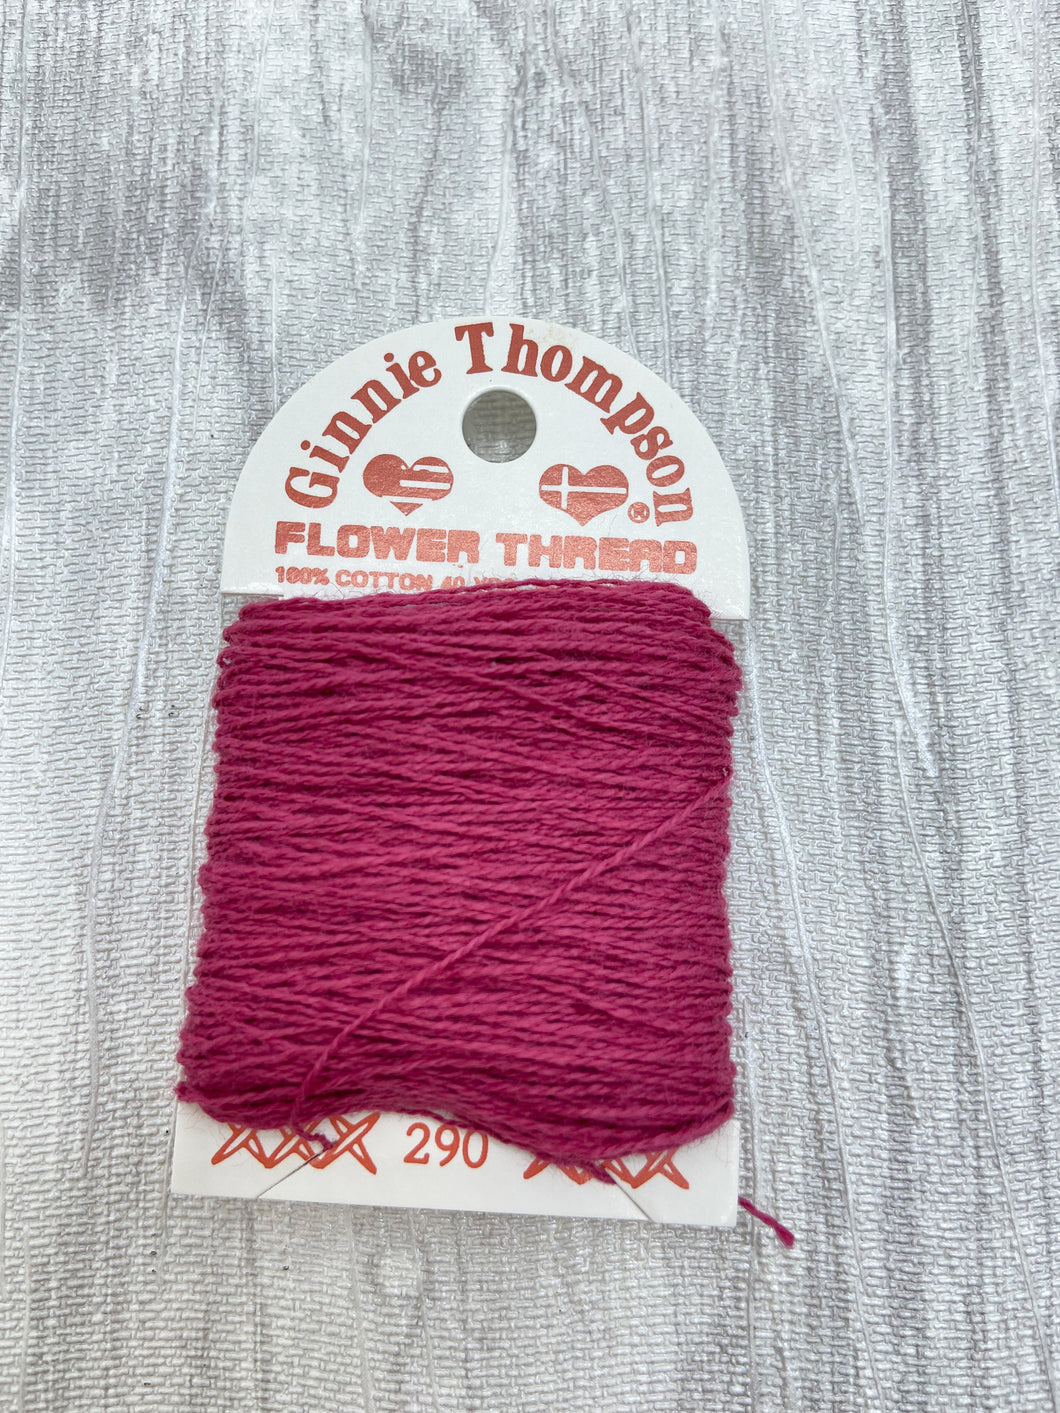 Dark Cranberry (290) Ginnie Thompson Flower Thread